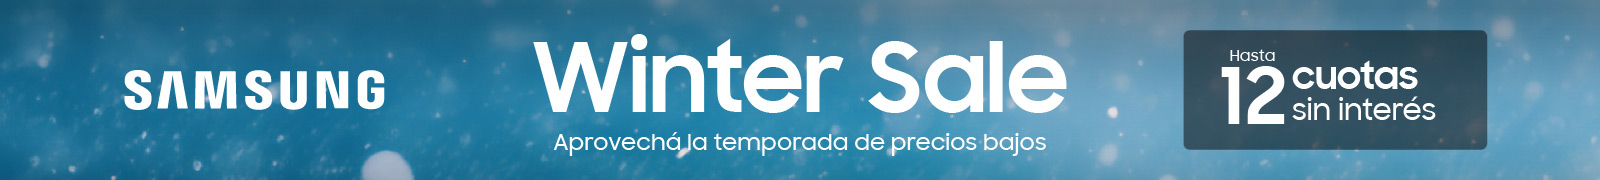 Samsung Winter Sale